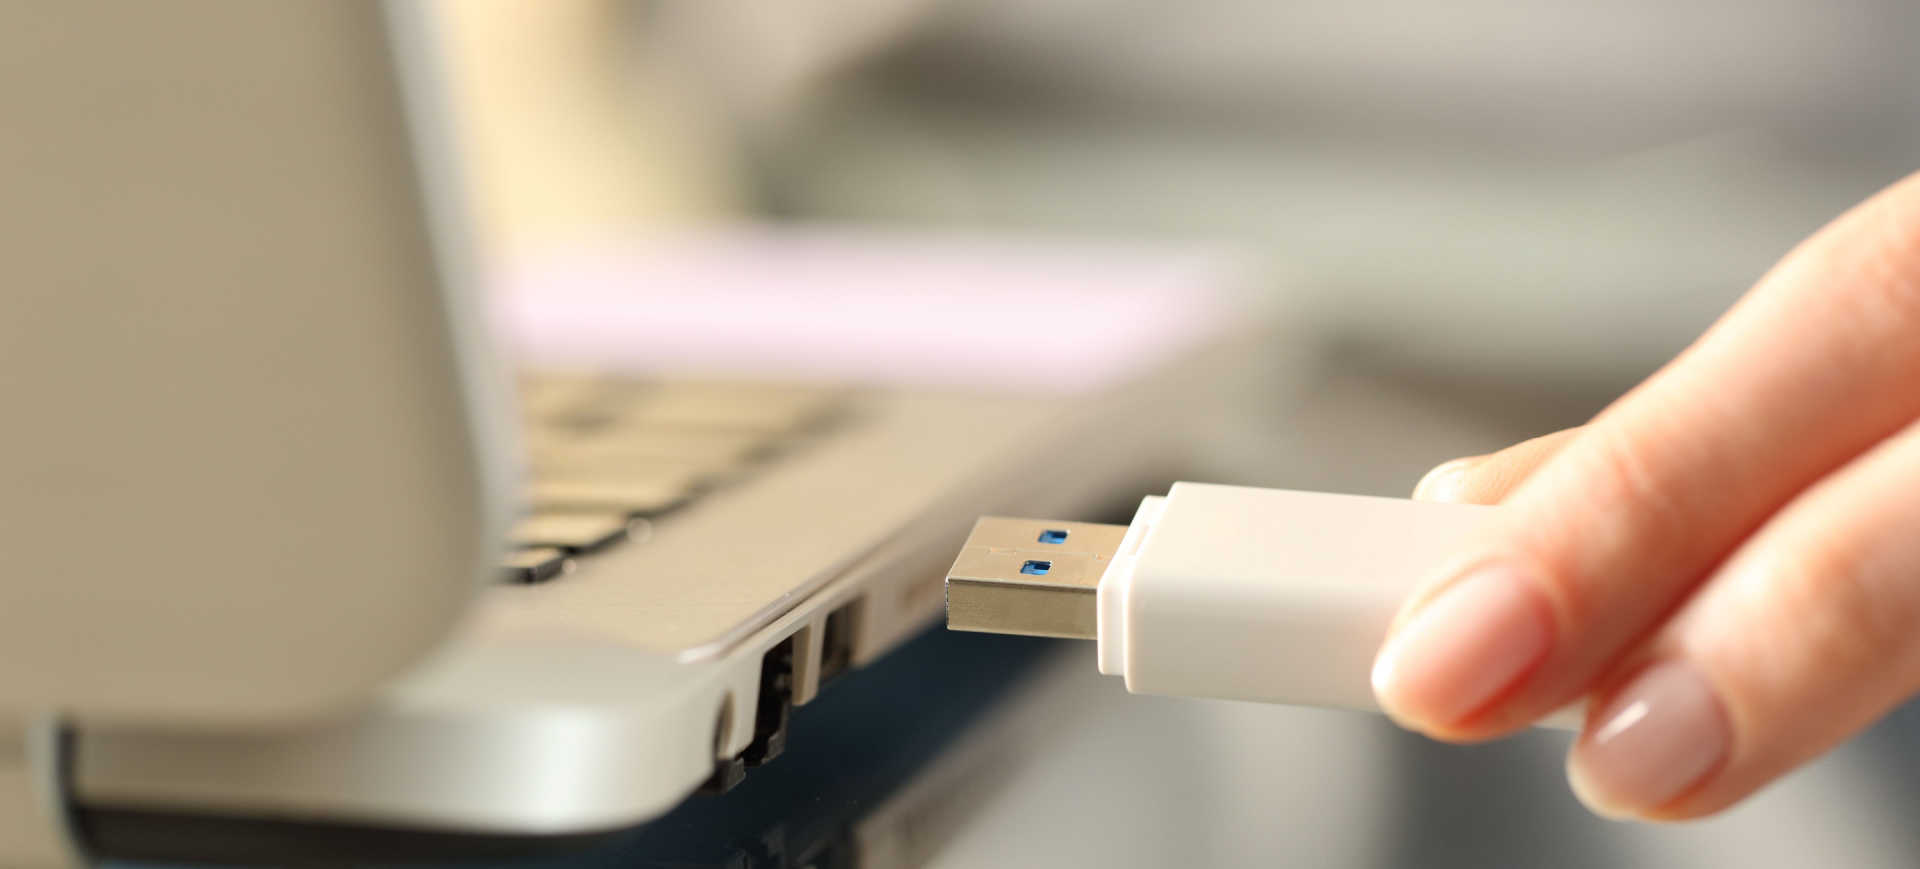 Imagem de pen-drive sendo inserido em uma entrada USB de um notebook para ilustrar a matéria sobre pen-drive explosivo